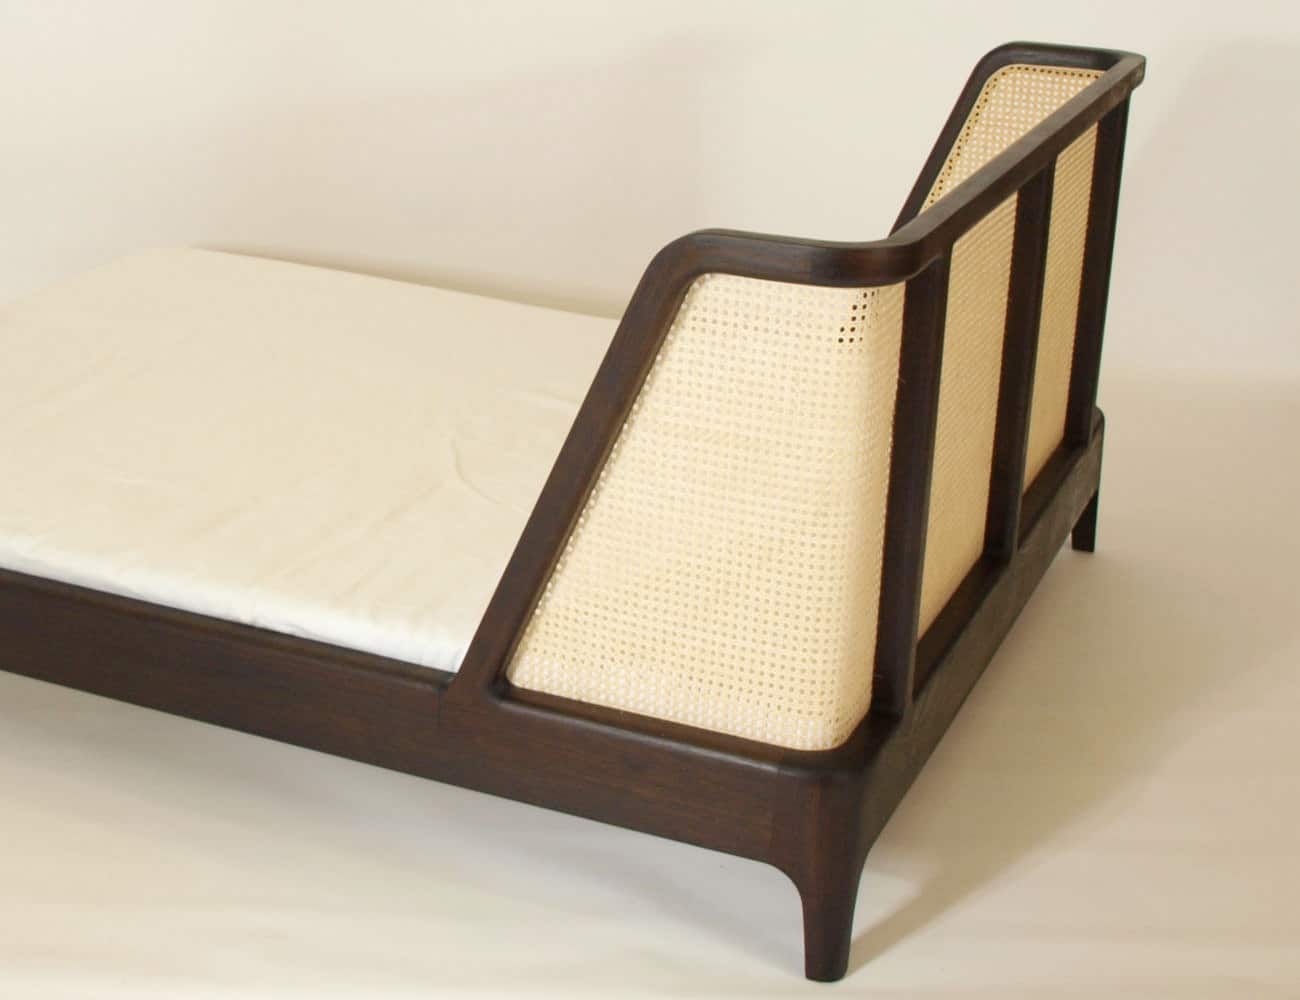 Bei diesem Bett mit Kopfteil entstand ein Starker Kontrast zwischen dem hellen Geflecht und dem dunklen Holz